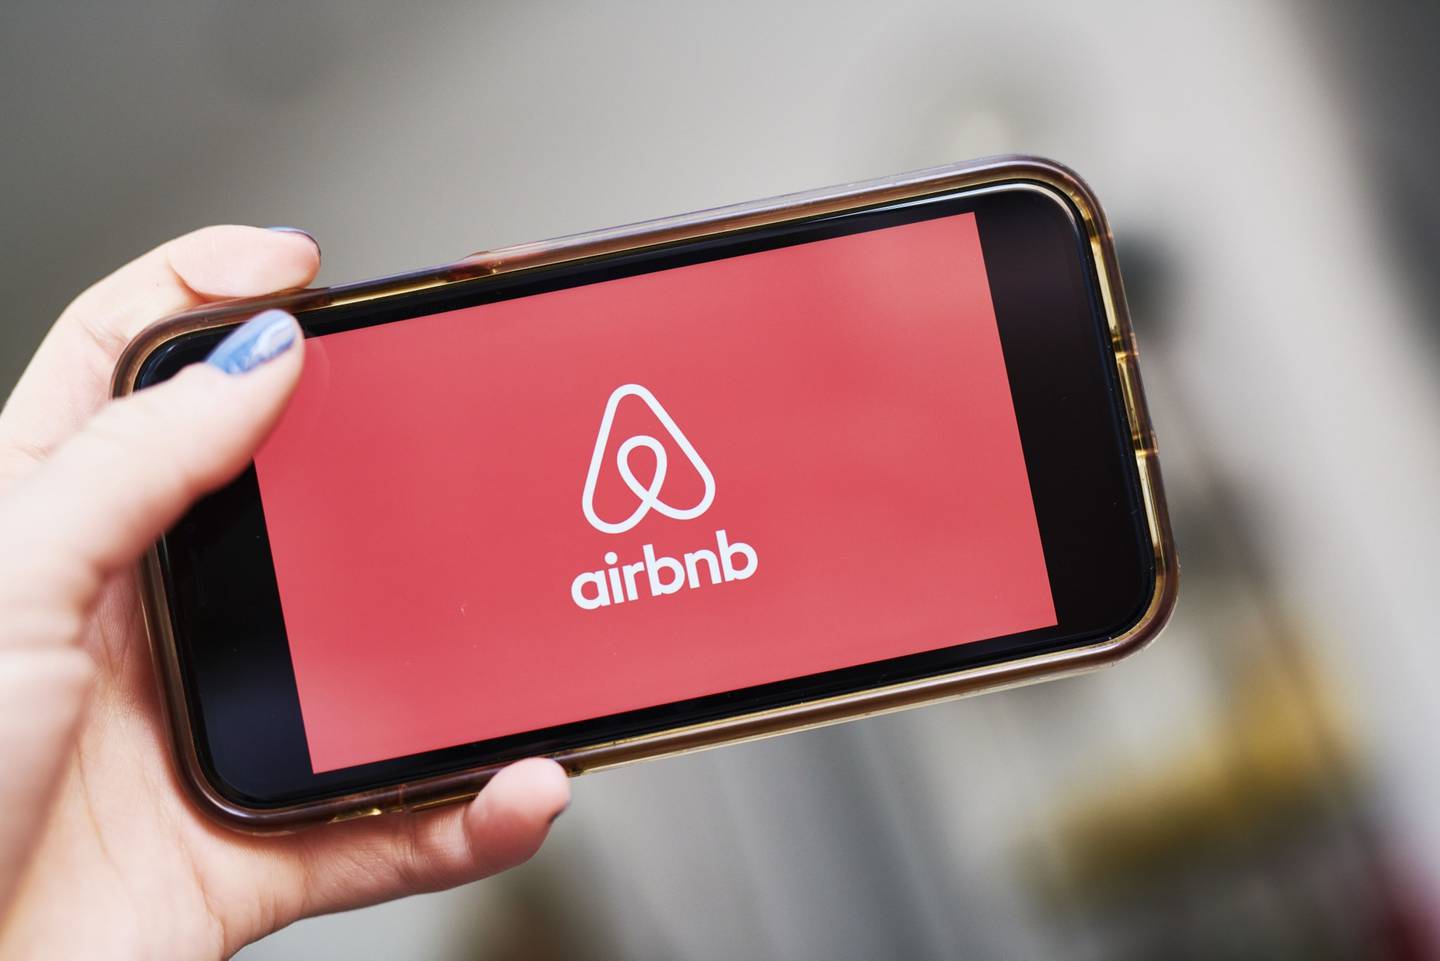 La señalización de AirBnb Inc. se muestra en un teléfono inteligente en una fotografía arreglada tomada en el barrio de Brooklyn de Nueva York, Estados Unidos, el viernes 17 de abril de 2020.